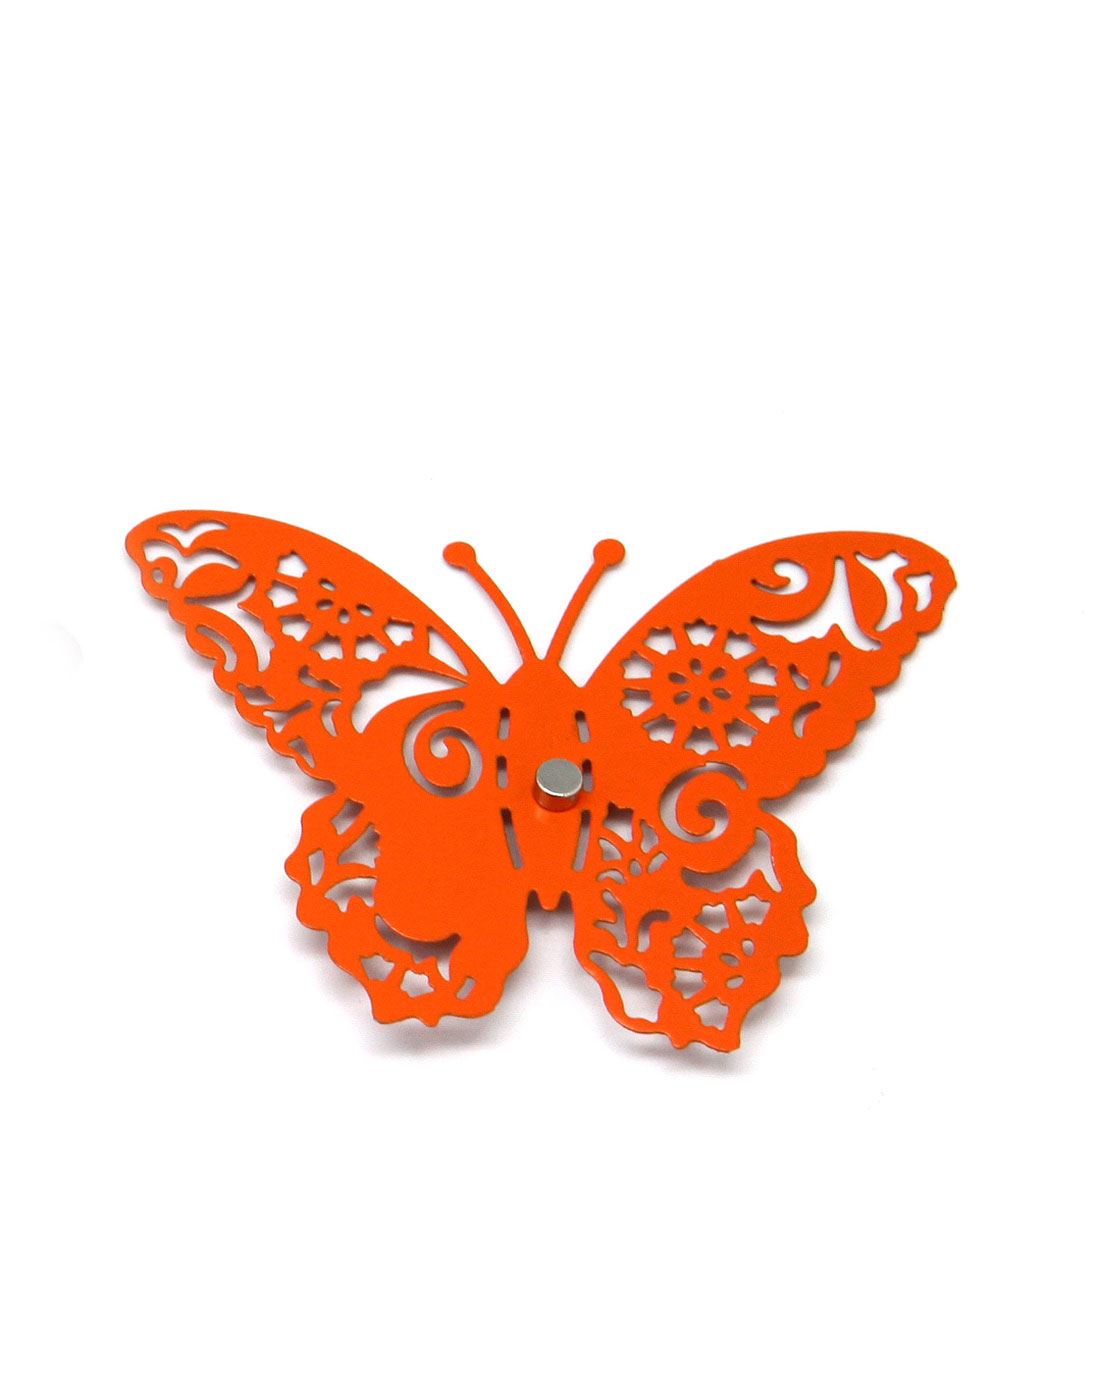 蝴蝶镂空图案雕花图片